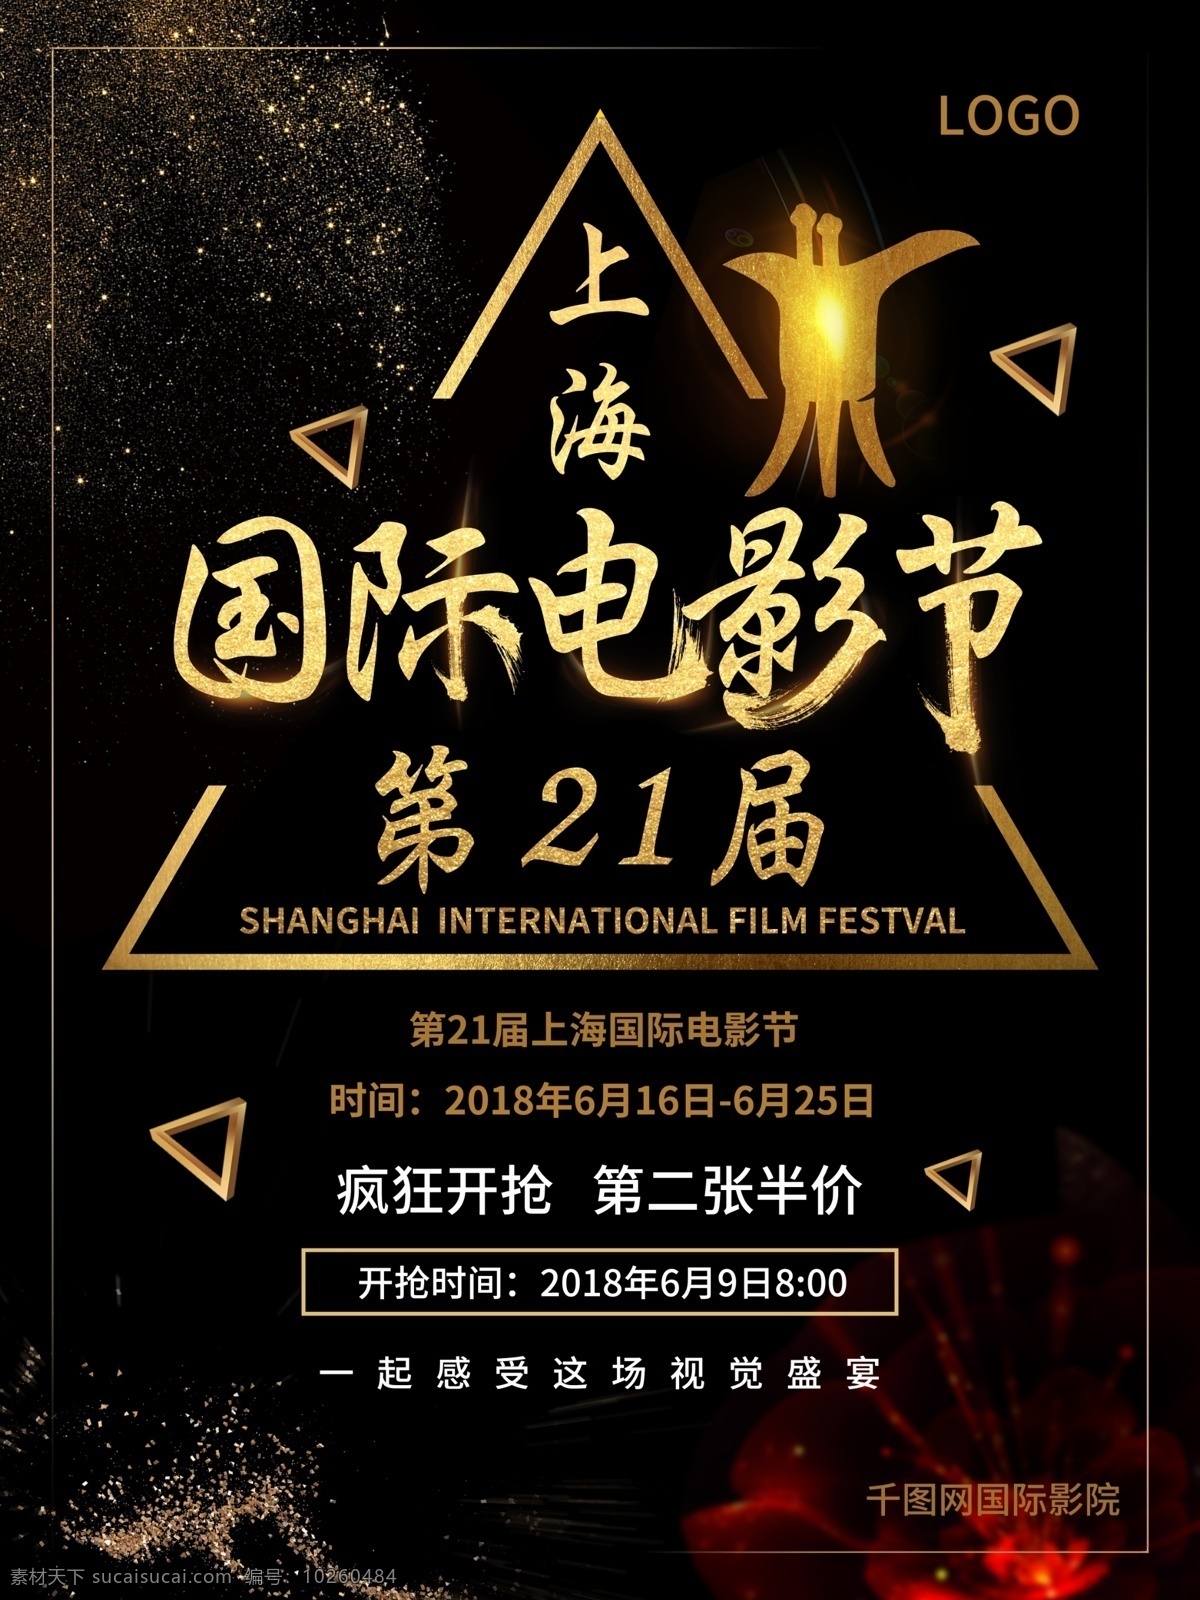 大气 黑金 上海 国际电影节 宣传海报 影院 金色 电影节